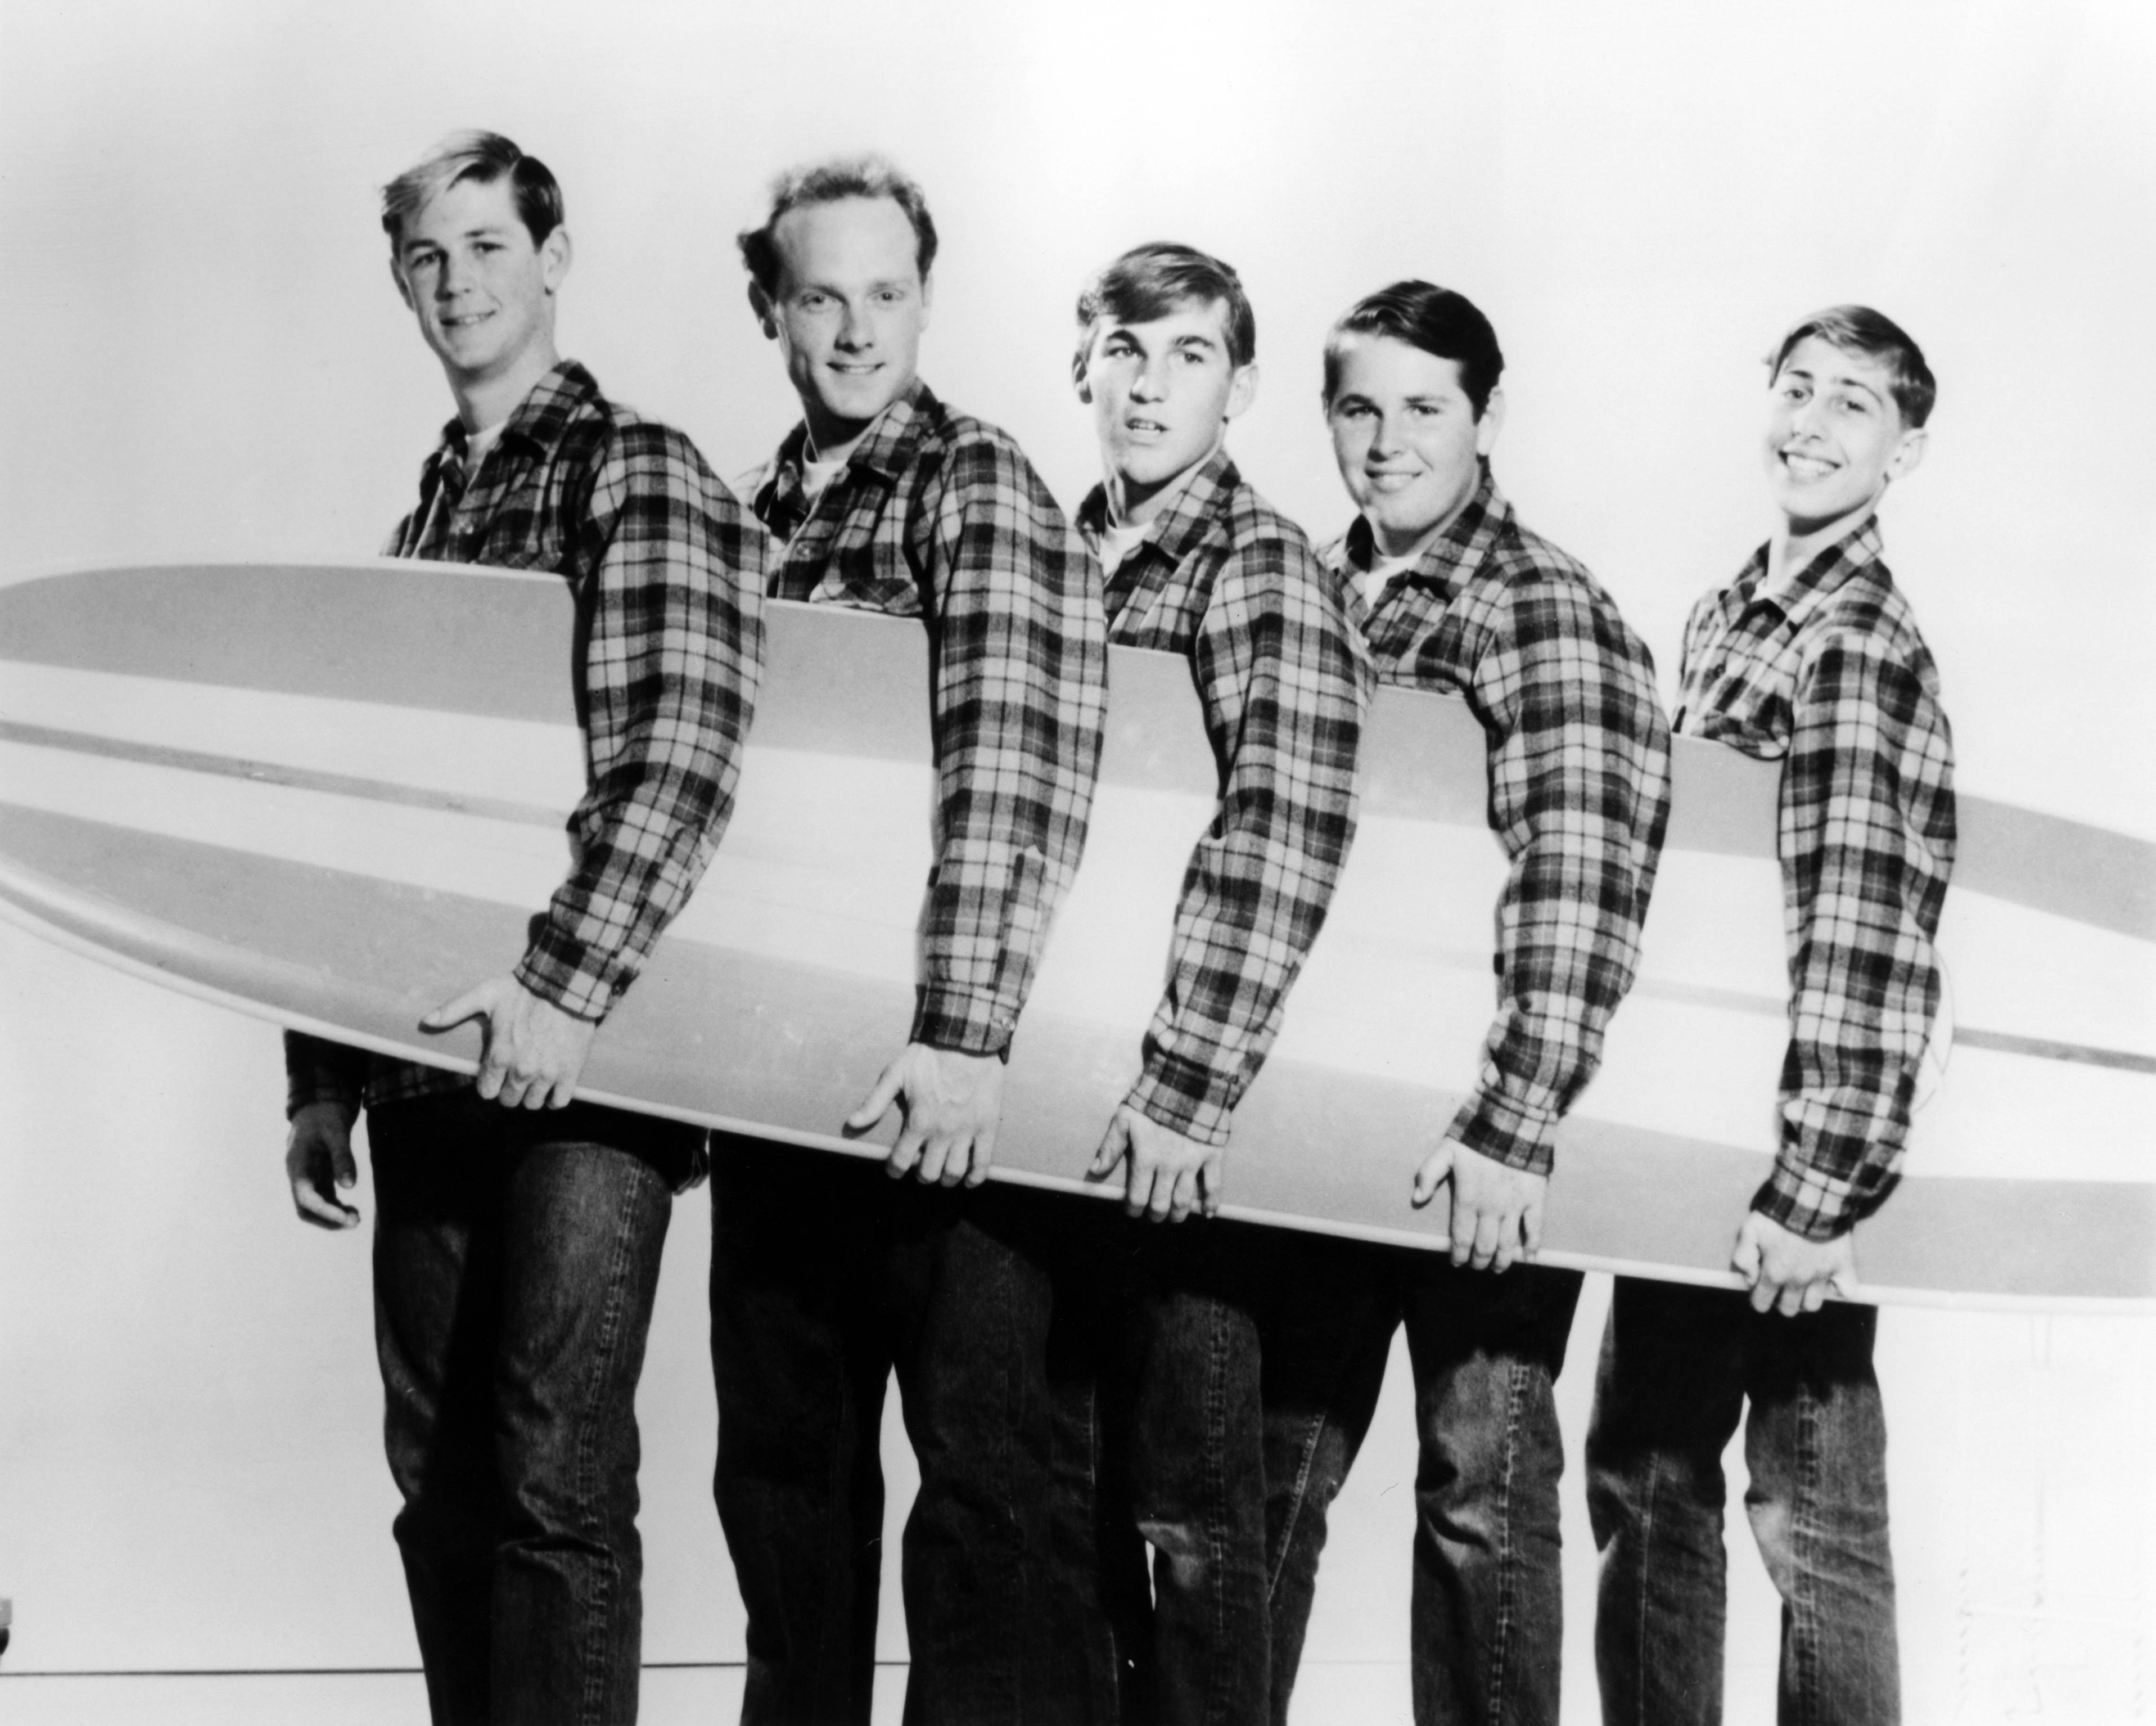 The Beach Boys with a surf board